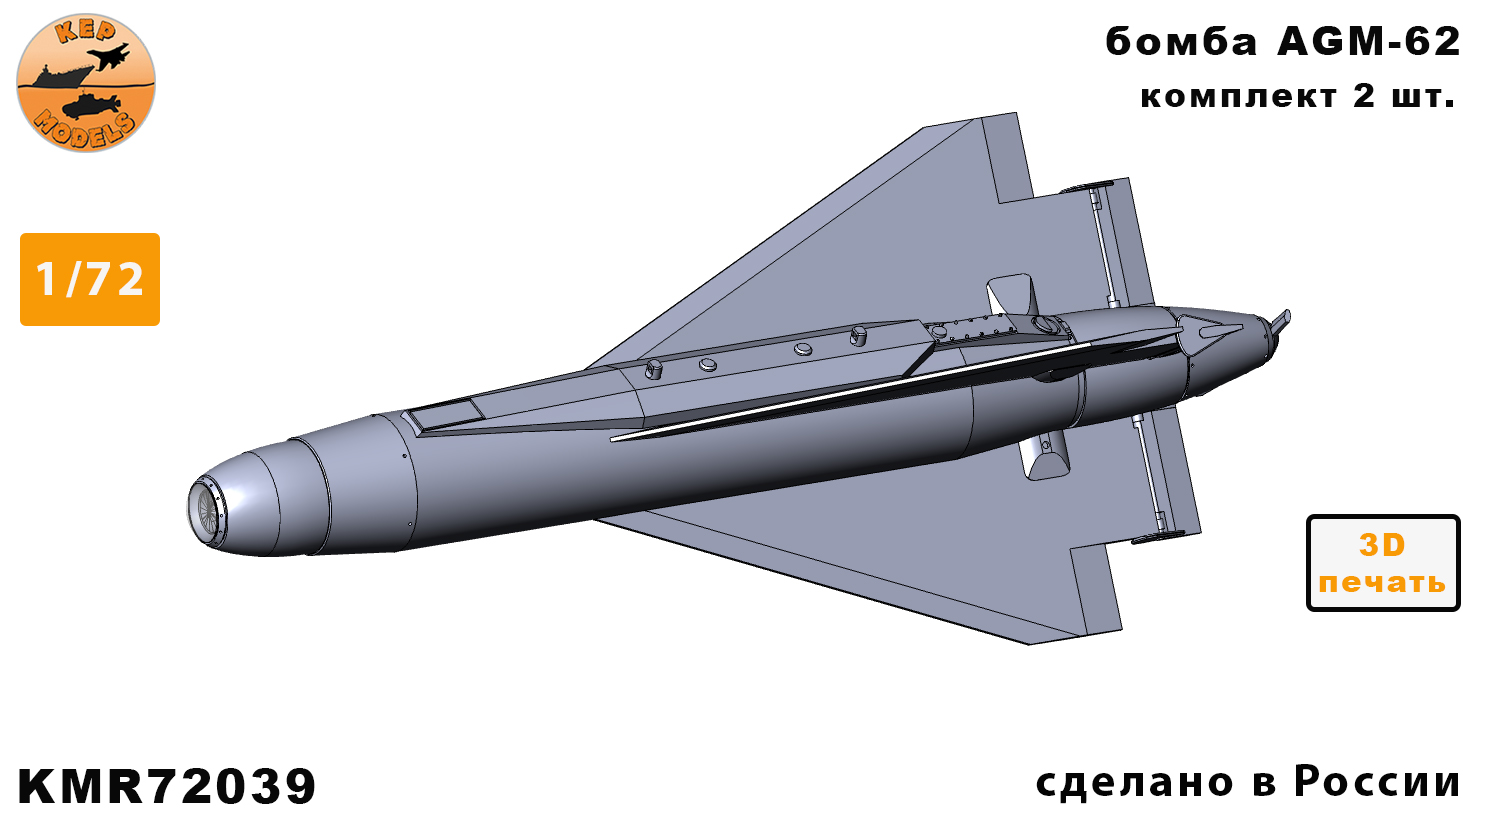 KMR72039  дополнения из смолы  Ракета AGM-62 (2шт.)  (1:72)